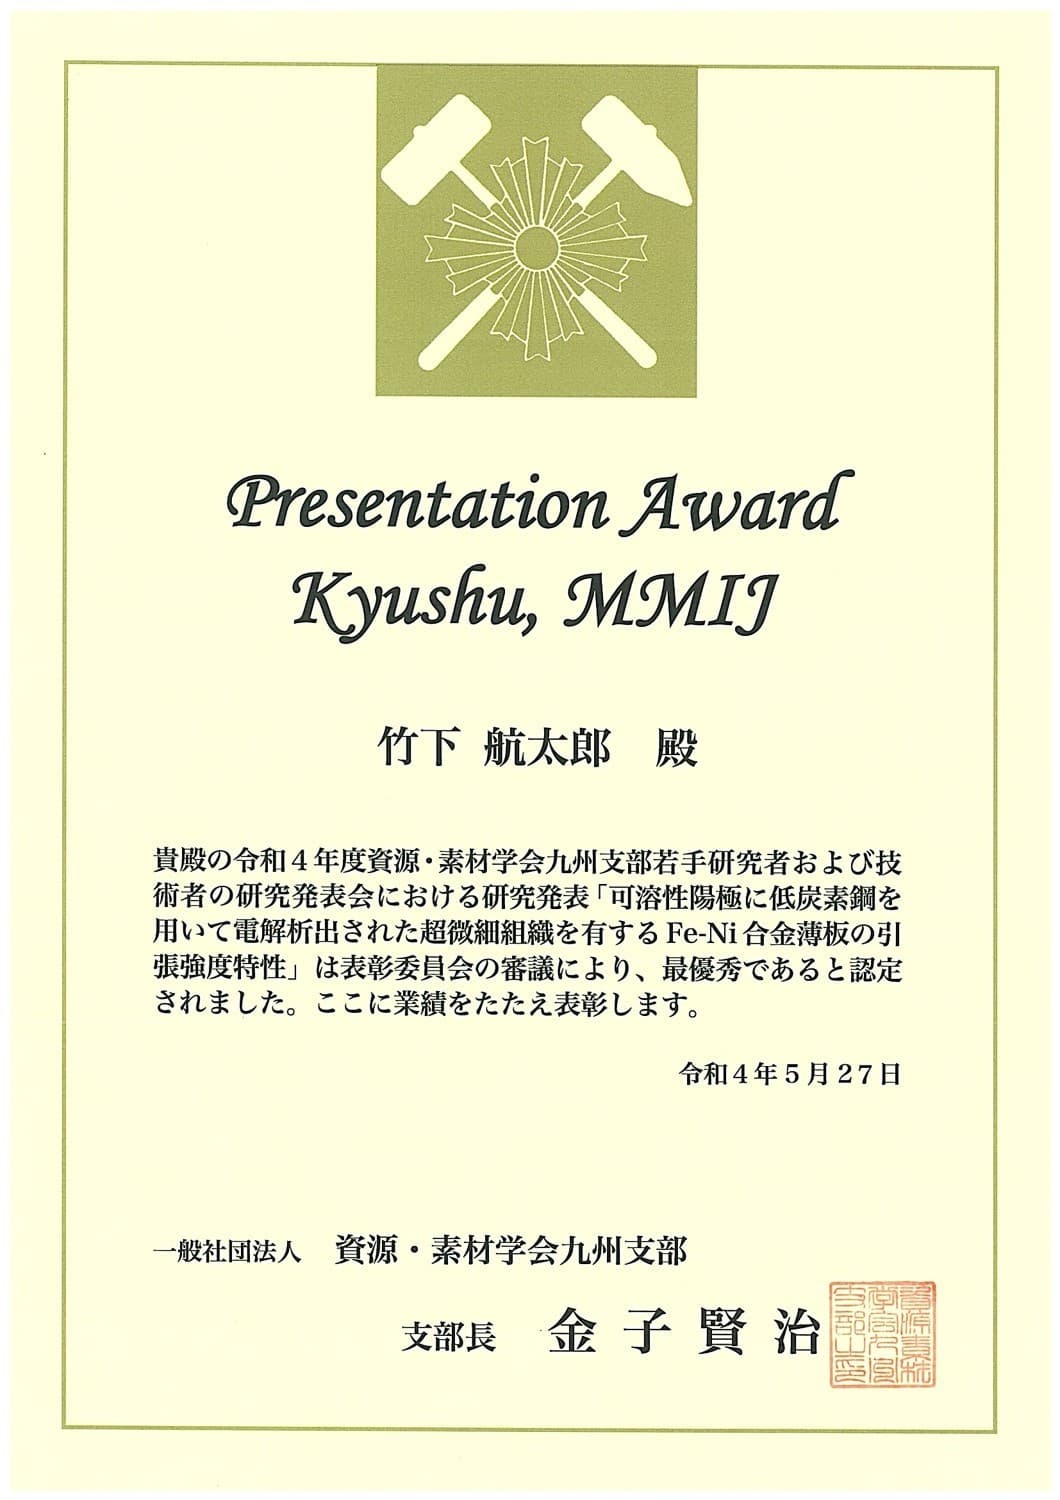 竹下航太郎君(M1)が，資源・素材学会九州支部若手研究者および技術者の研究発表会において，Presentation Award Kyushu, MMIJを受賞しました。2022/5/27